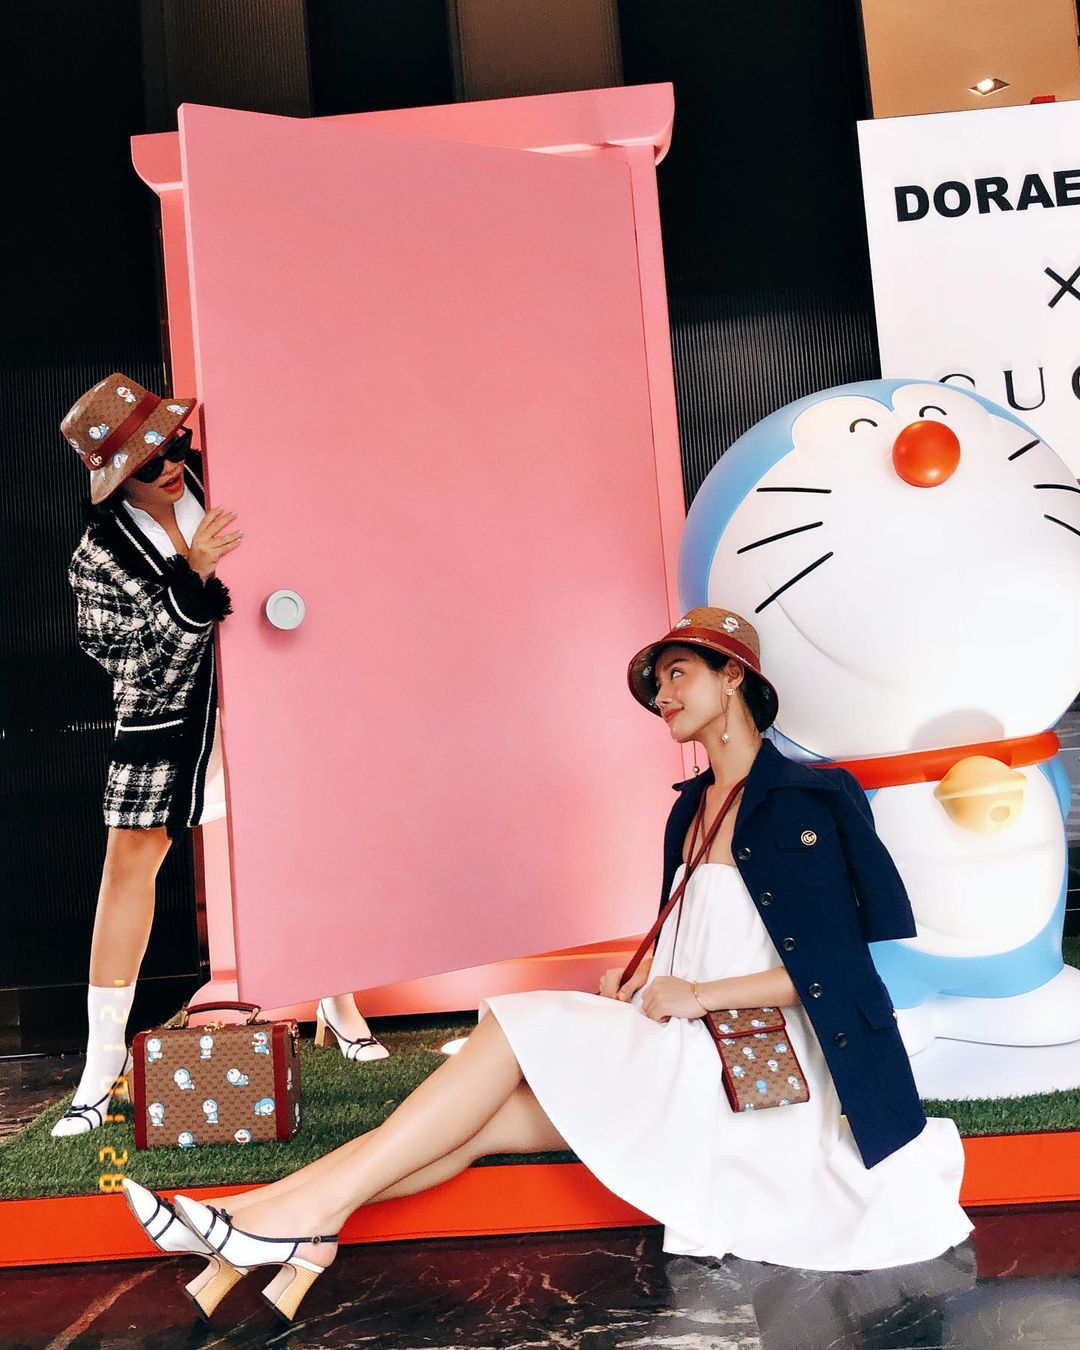 Điểm chụp ảnh hot mùa Tết: Cửa hàng Gucci với mèo máy Doraemon